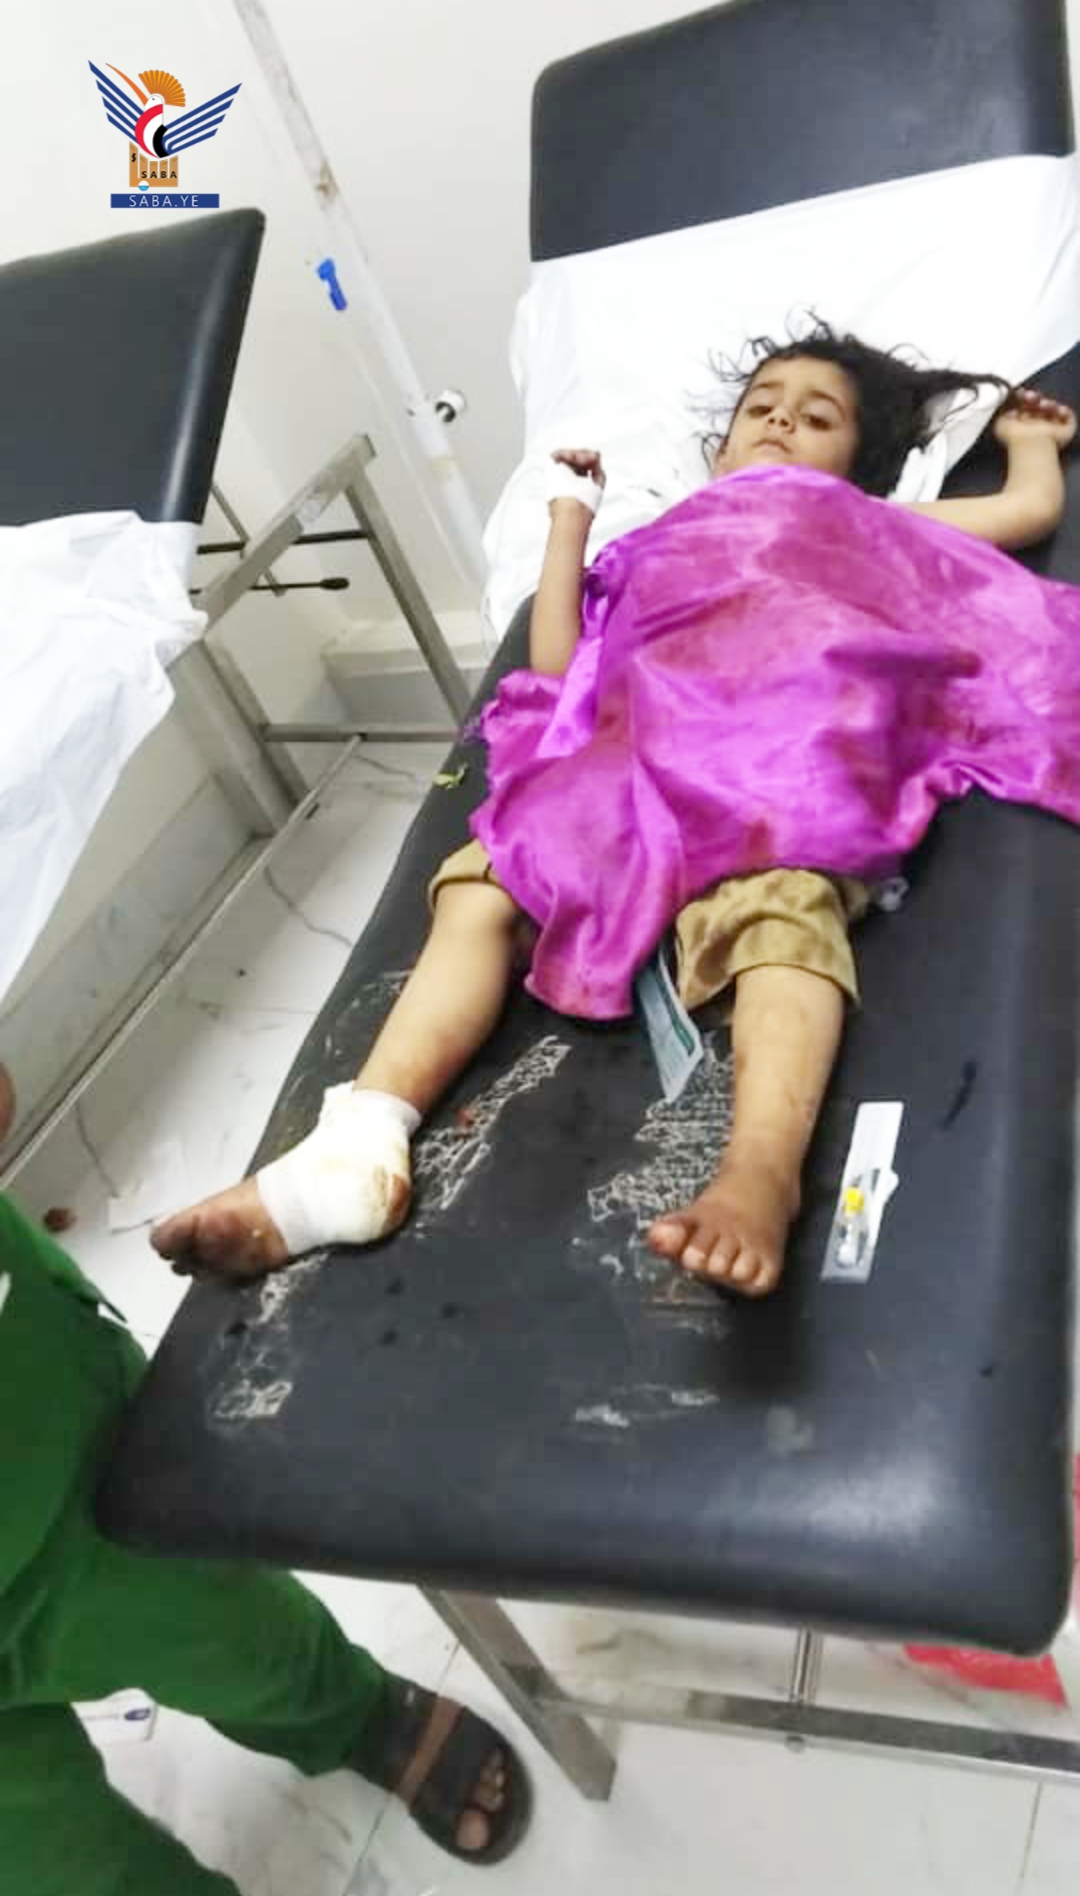 21 civiles murieron y resultaron heridos como consecuencia de la explosión de bombas de racimo y restos de guerra el pasado mes de noviembre